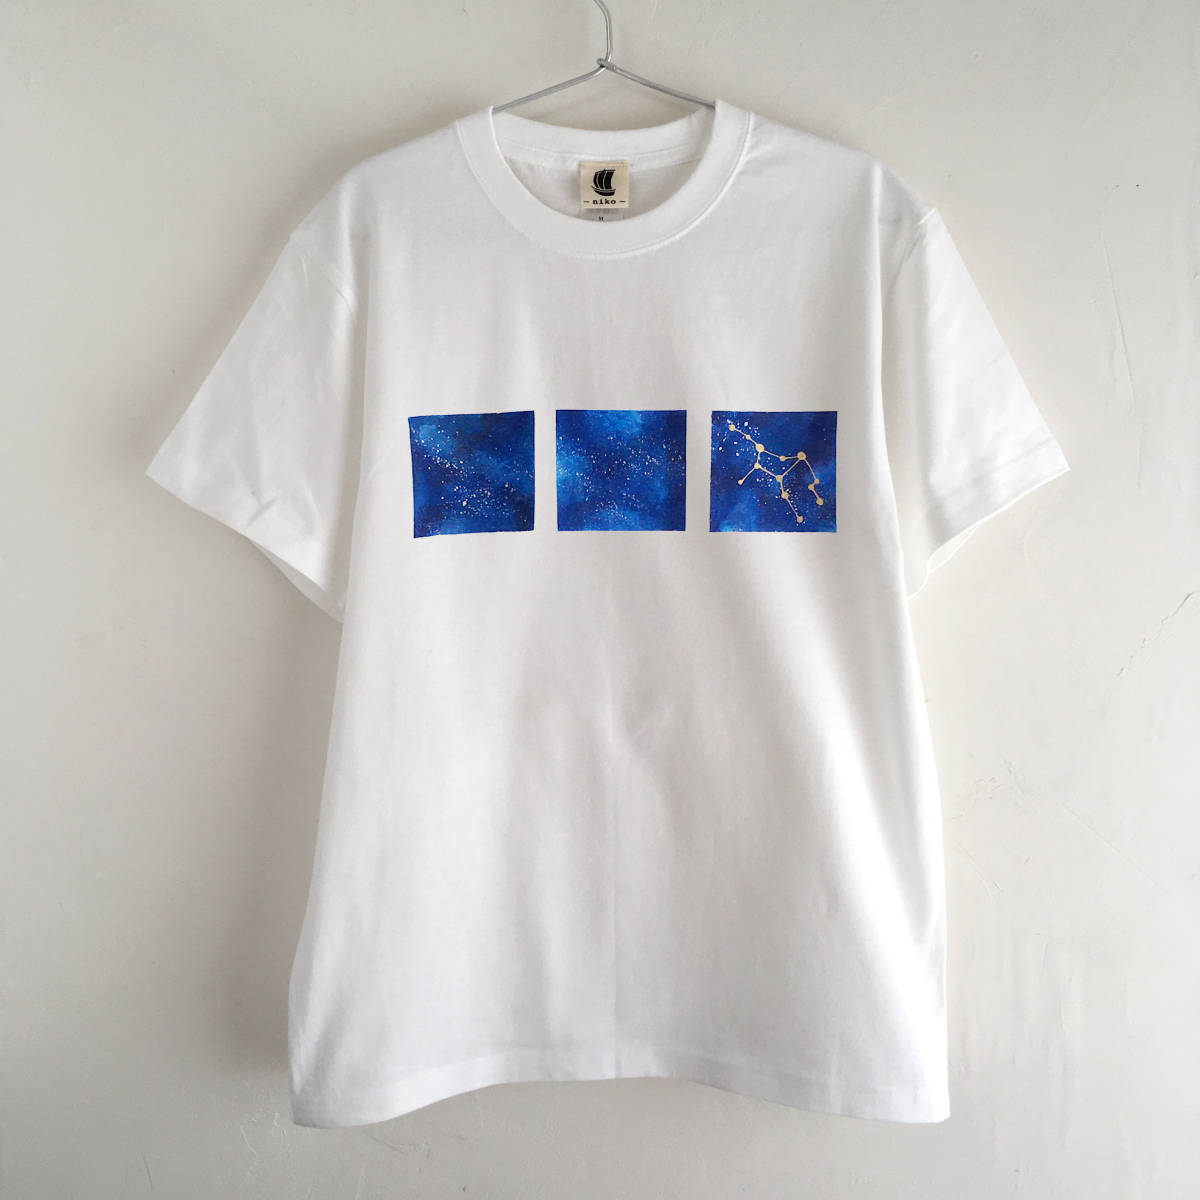 T-shirt motif espace dessiné à la main avec 12 constellations au choix, blanc, Taille M, galaxie, ciel étoilé, Taille M, col rond, à motifs